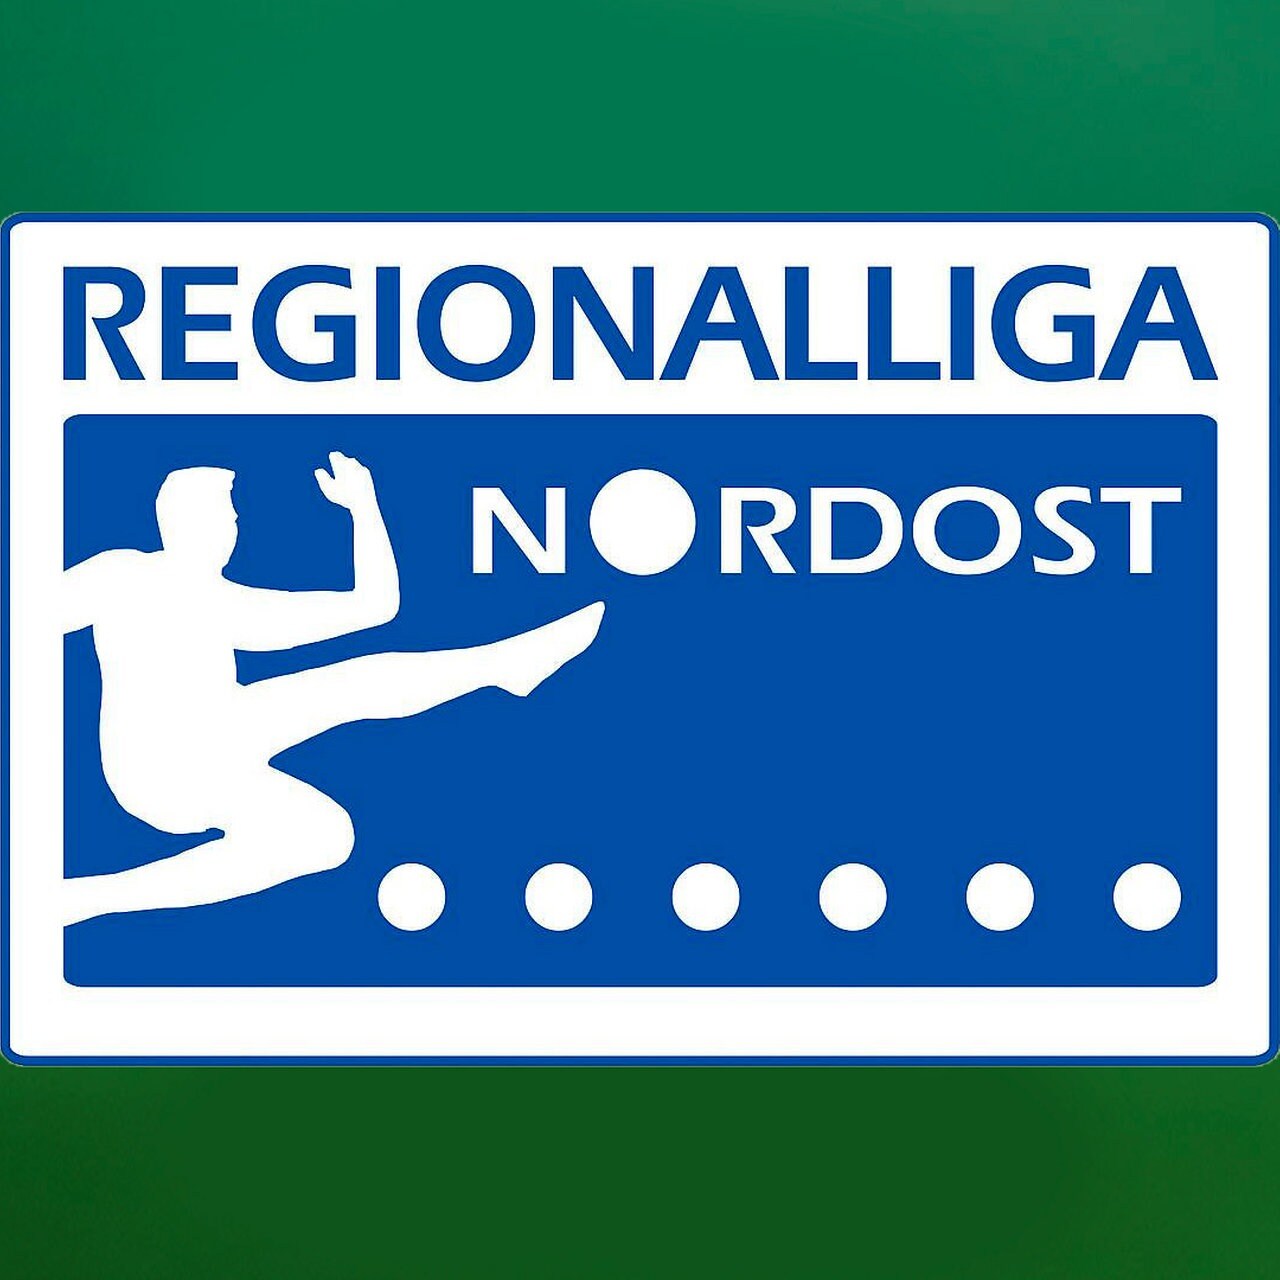 Regionalliga Nordost News und Infos zu den mitteldeutschen Vereinen MDR.DE